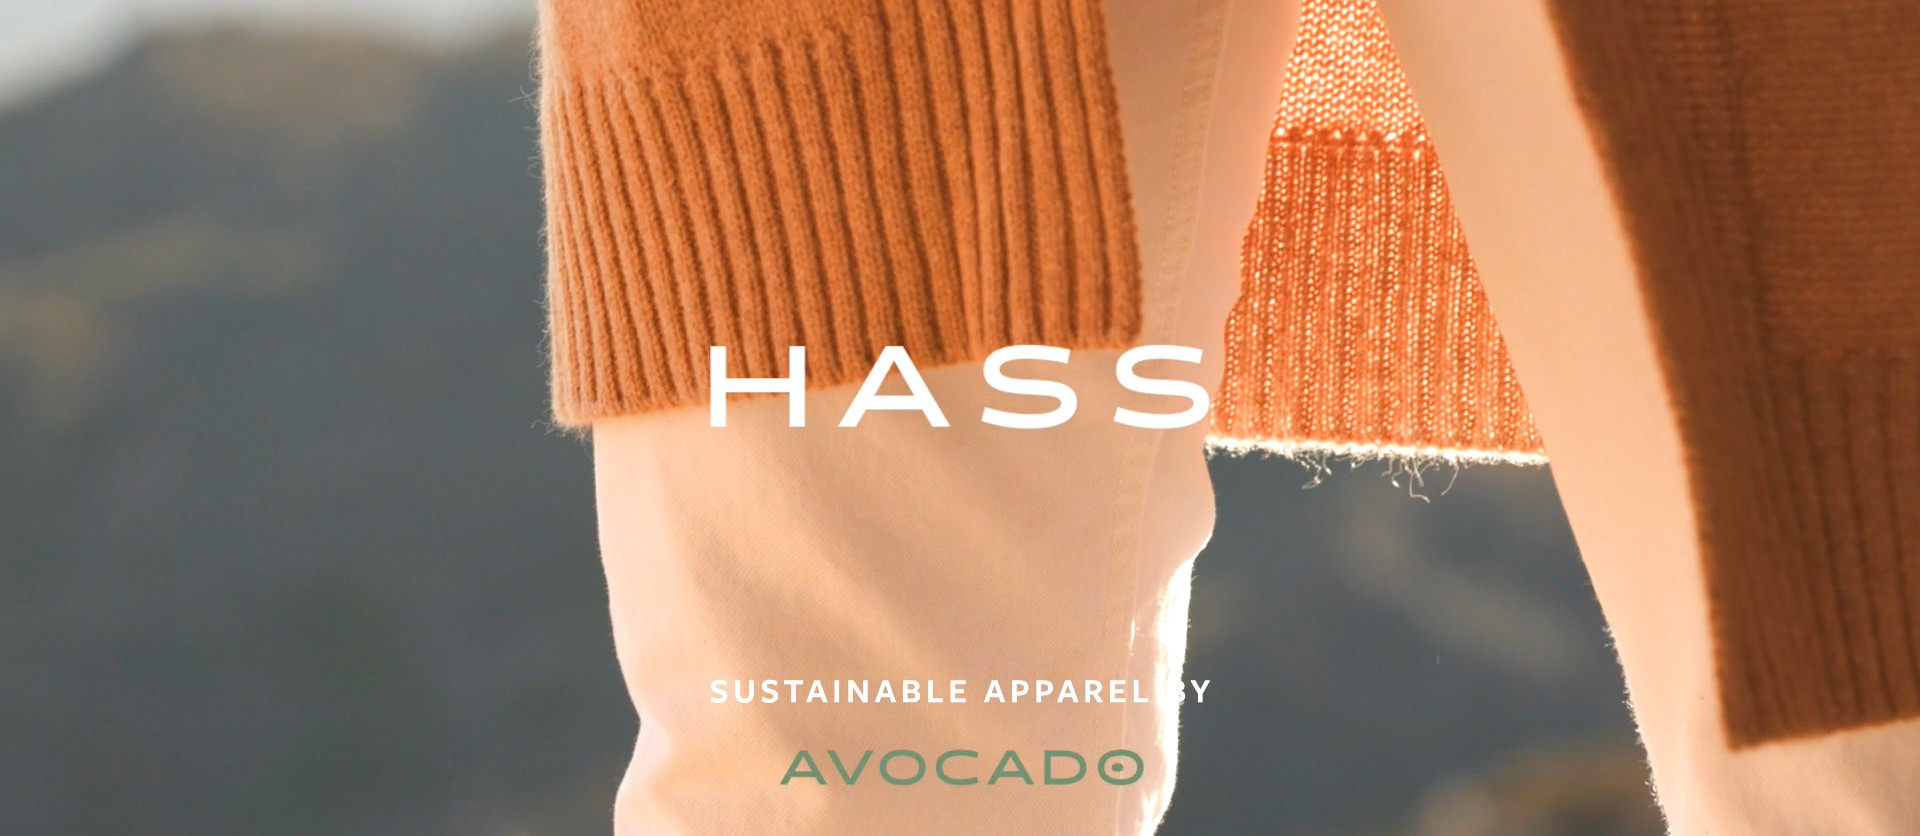 hass apparel sustainably made avocado